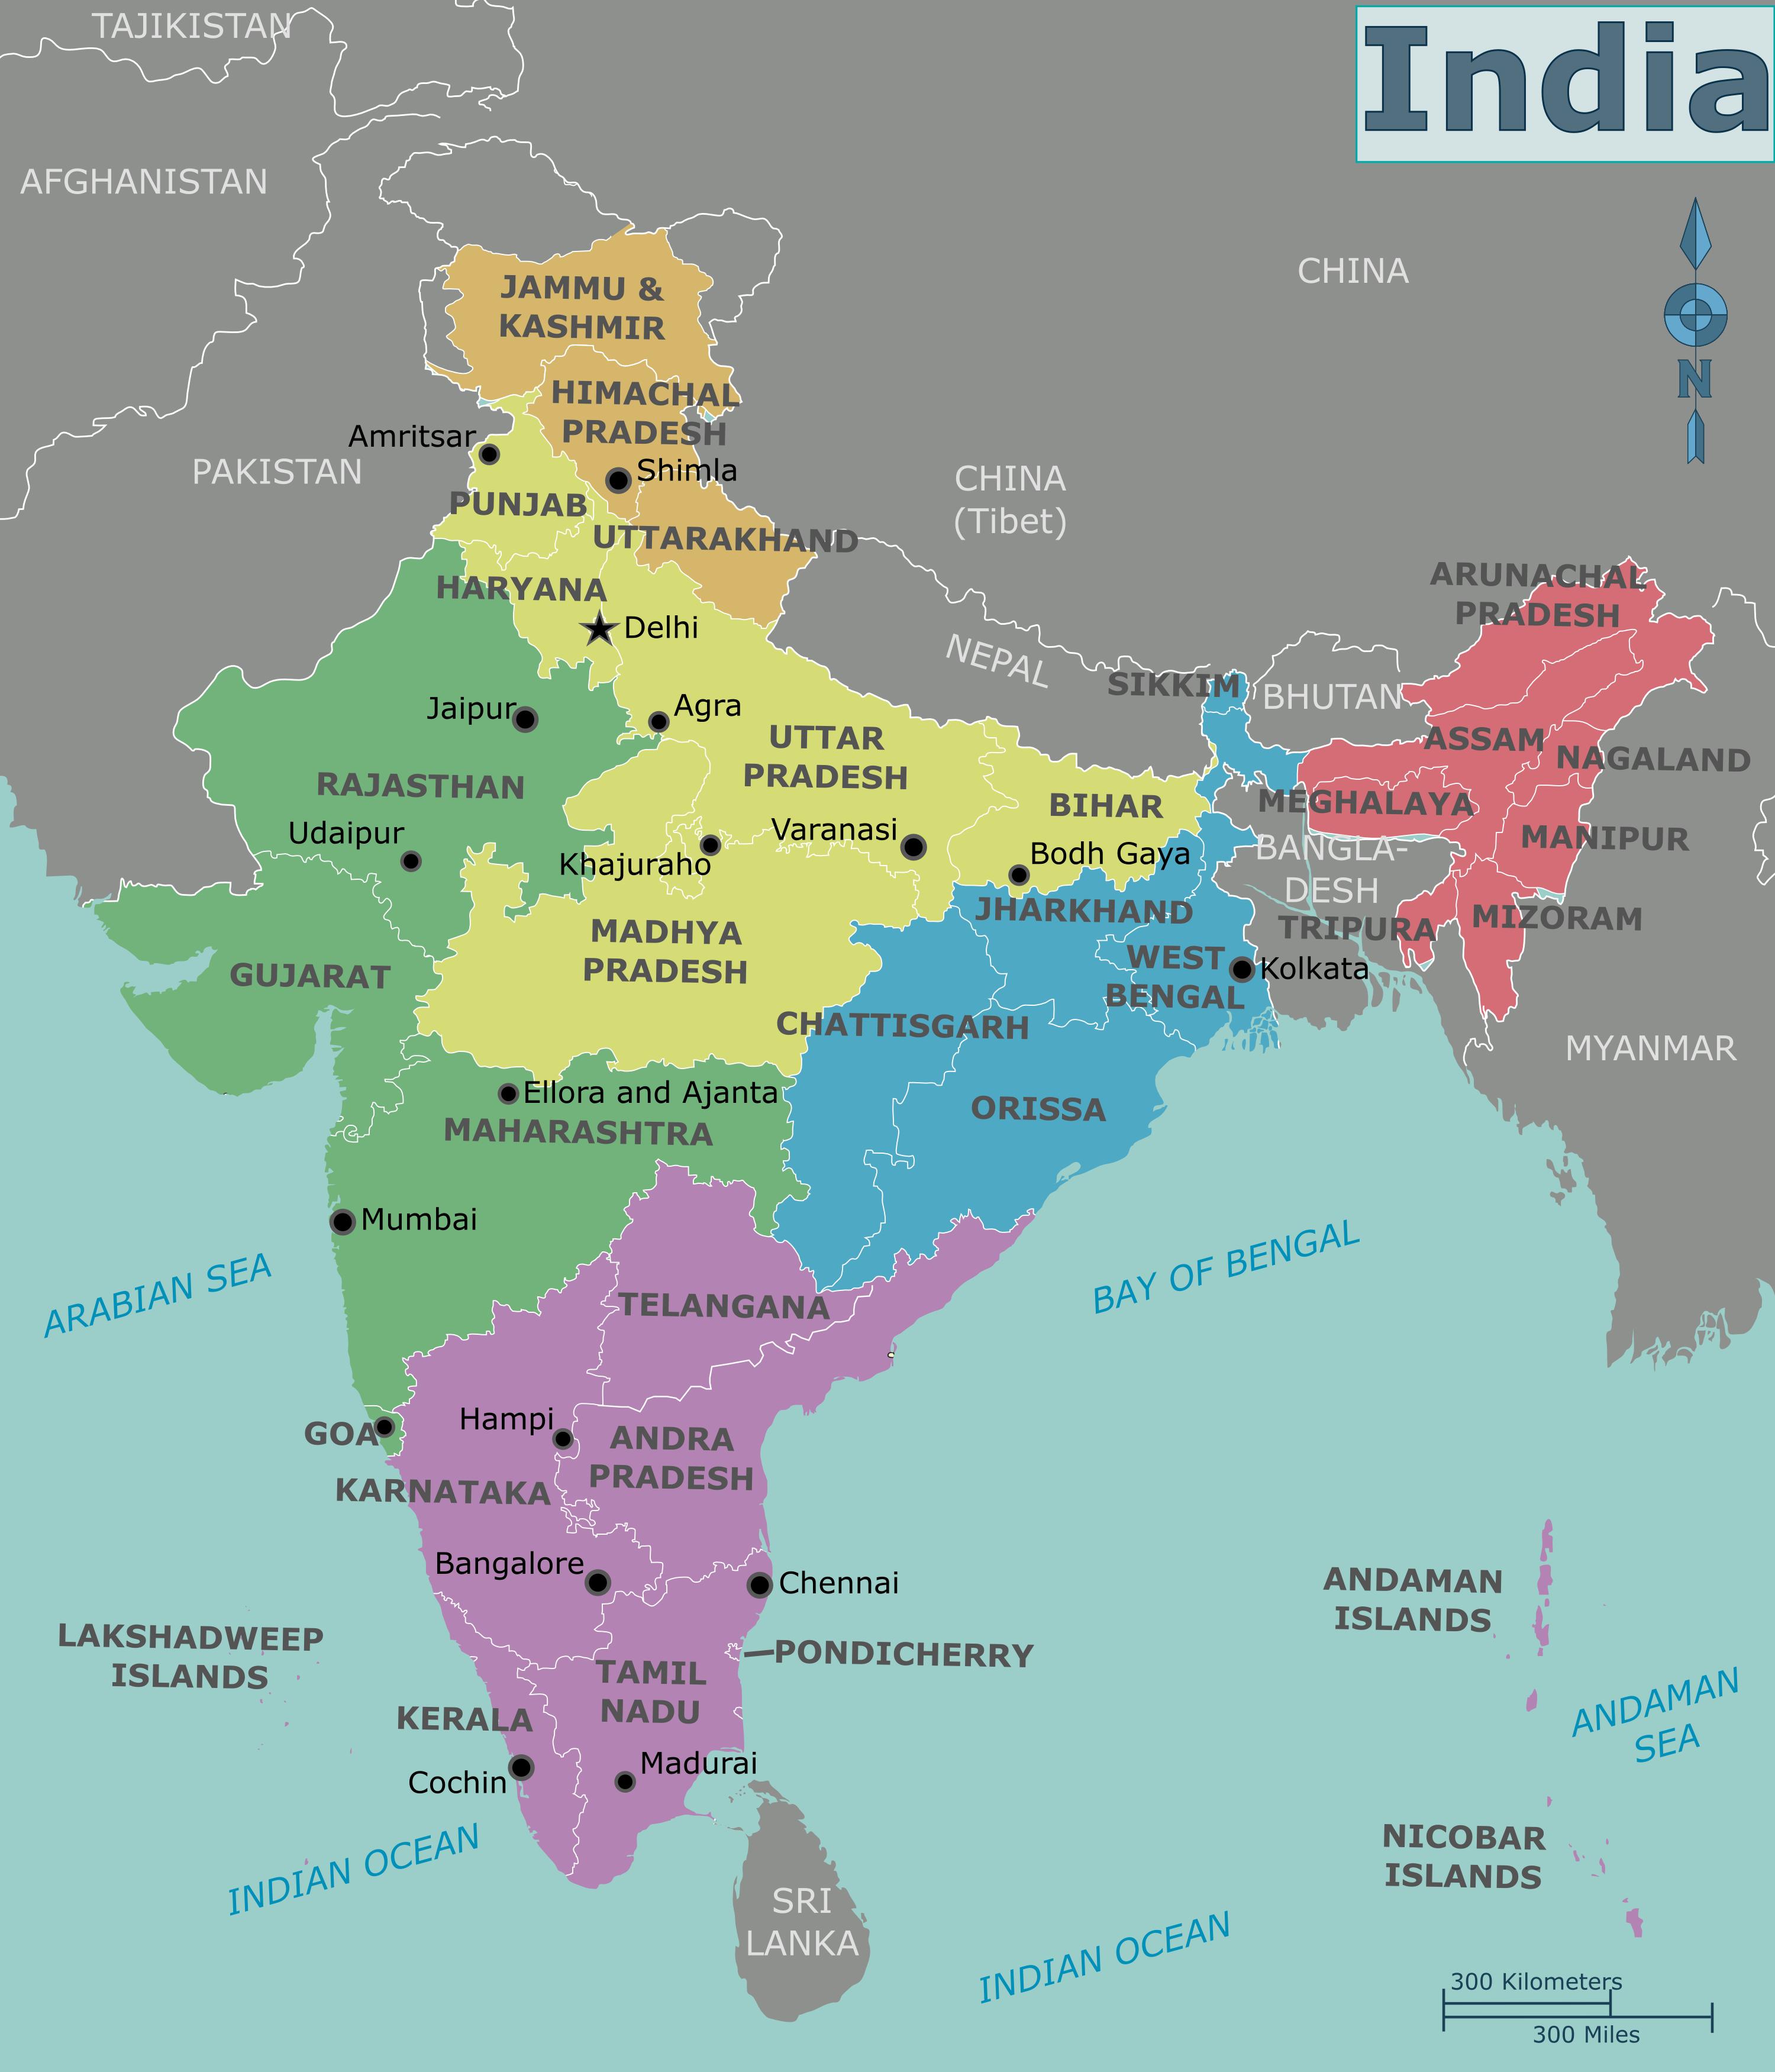 India Regions Map 